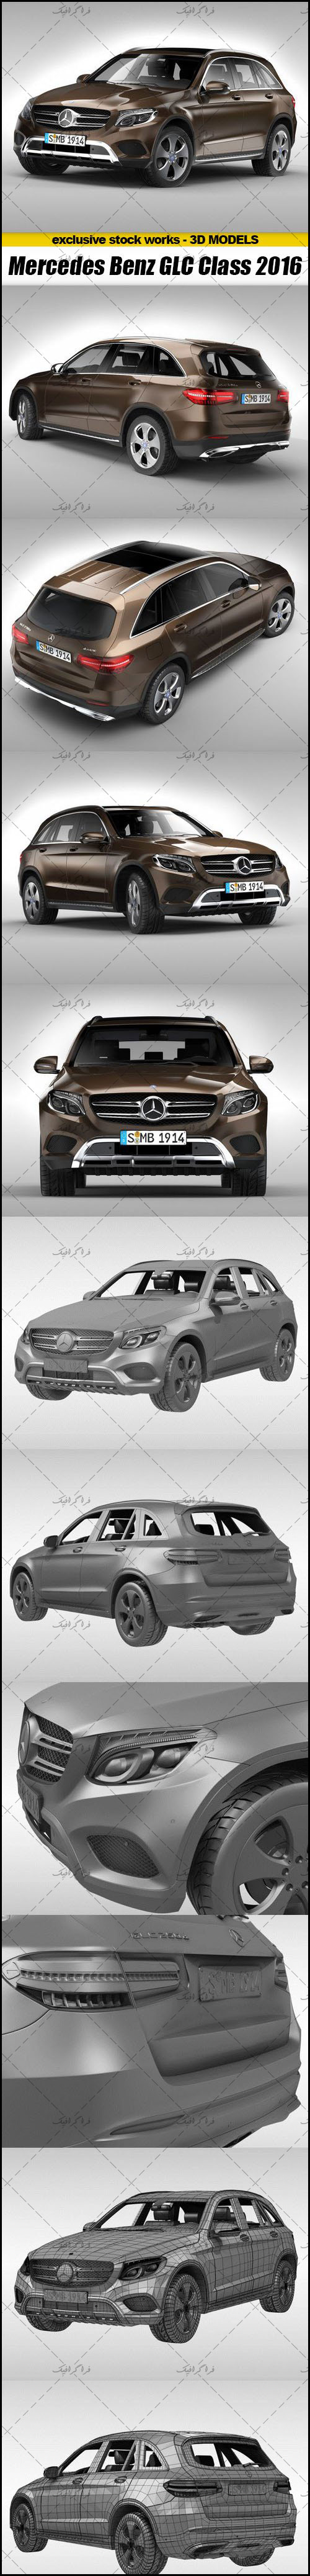 دانلود مدل 3 بعدی اتومبیل Mercedes Benz GLC